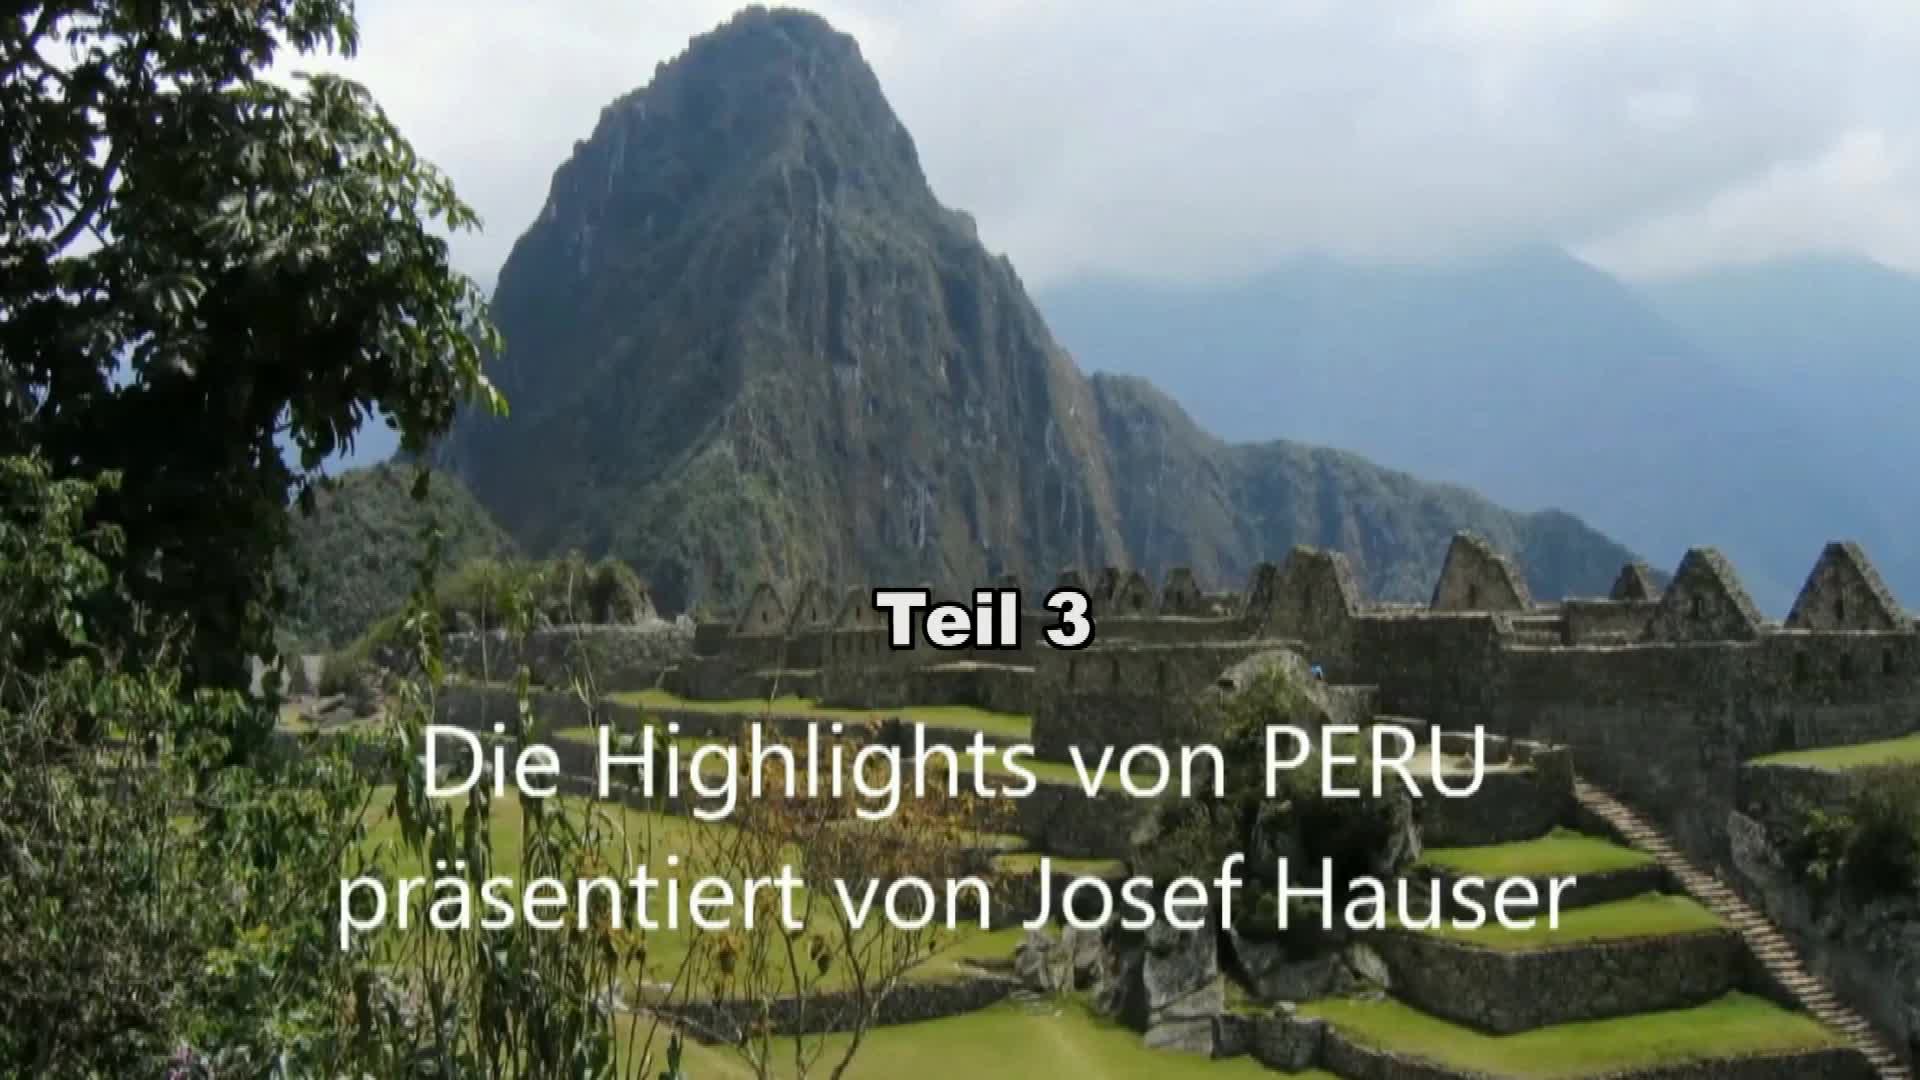 Die Highlights von Peru 3